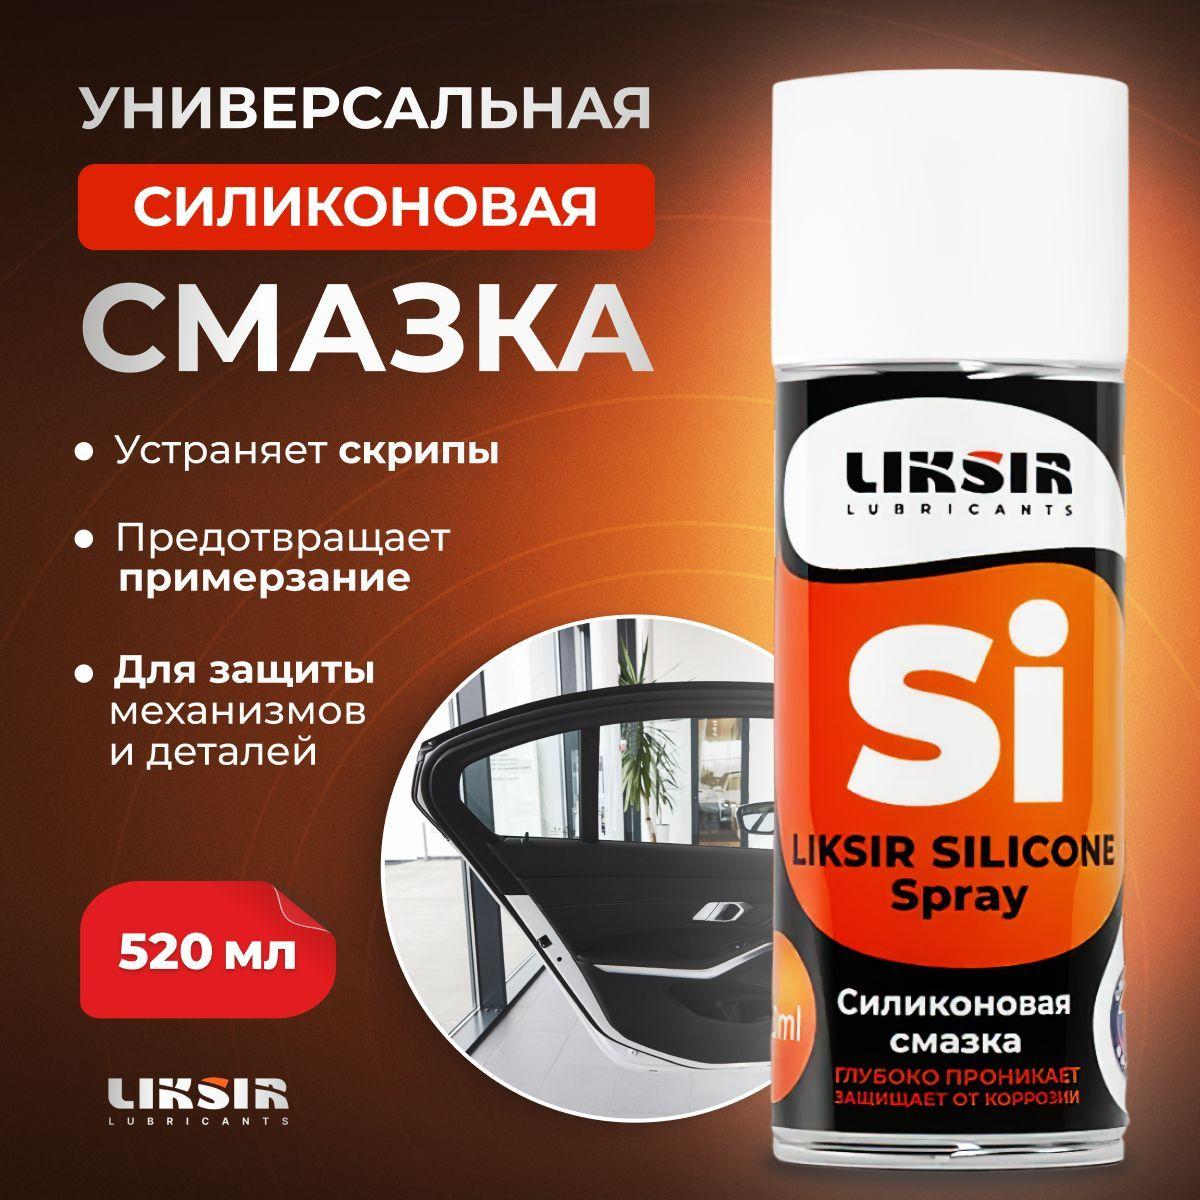 Cиликоновая cмазка, силиконовая смазка для авто LIKSIR SILICONE Spray,520 мл.